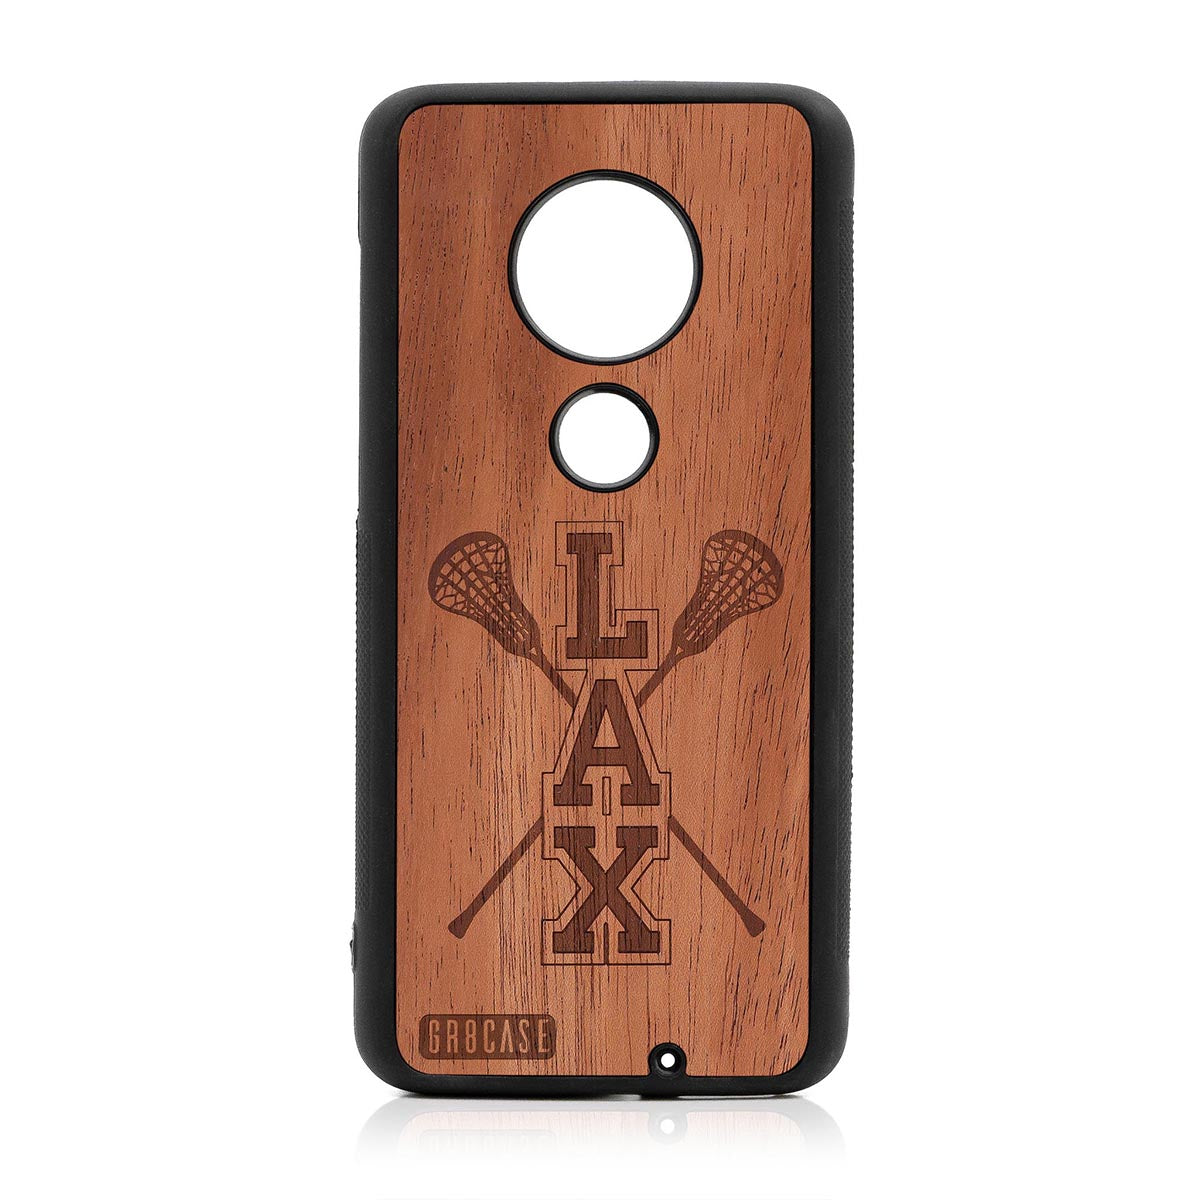 Lacrosse (LAX) Sticks Design Wood Case Moto G7 Plus by GR8CASE